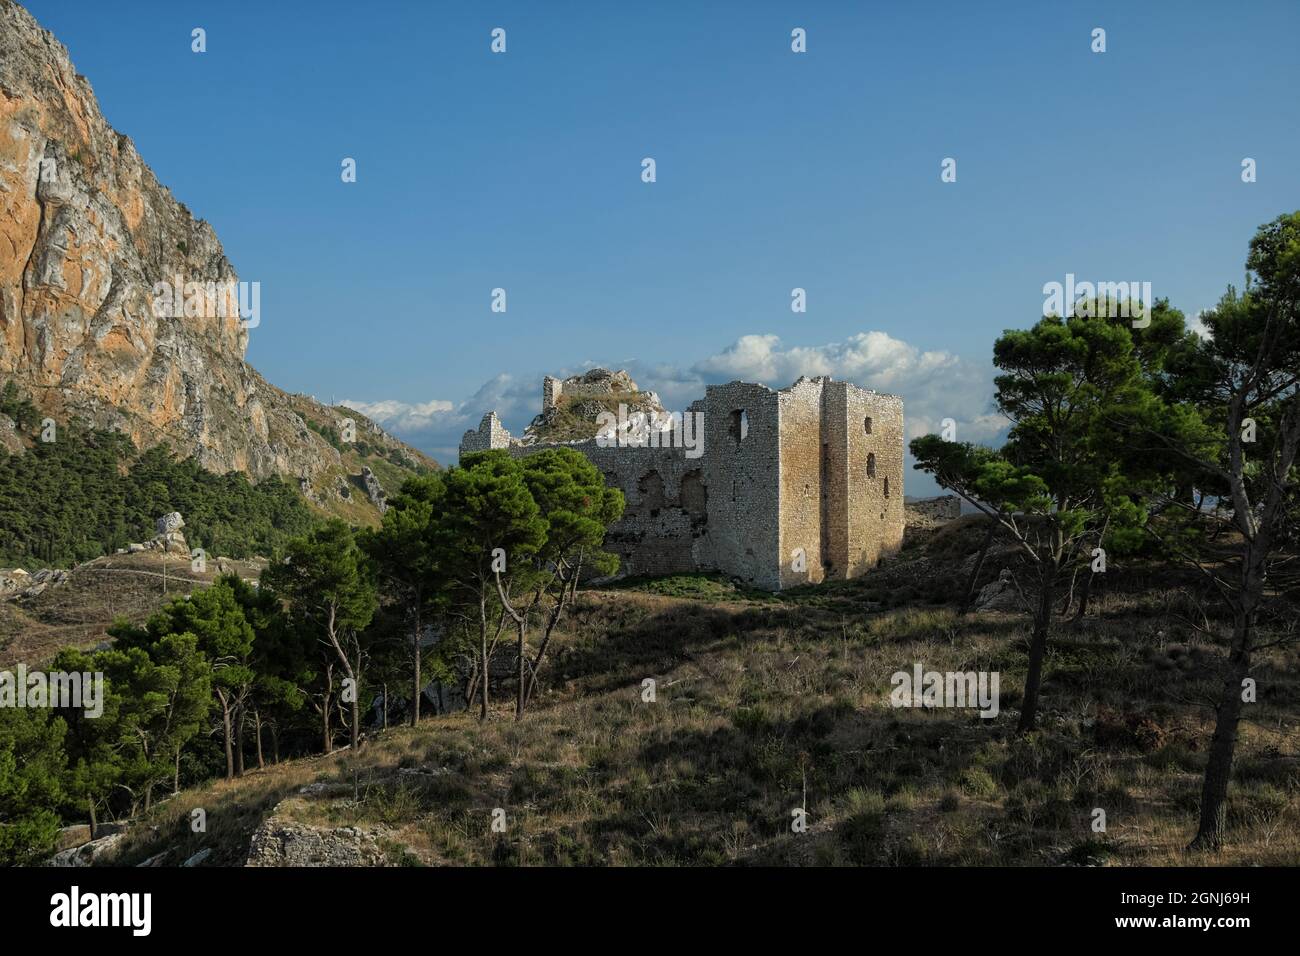 Castello di montagna in Sicilia rovine del centro storico fortificato di Terravecchia a Caltavuturo (Palermo) Foto Stock